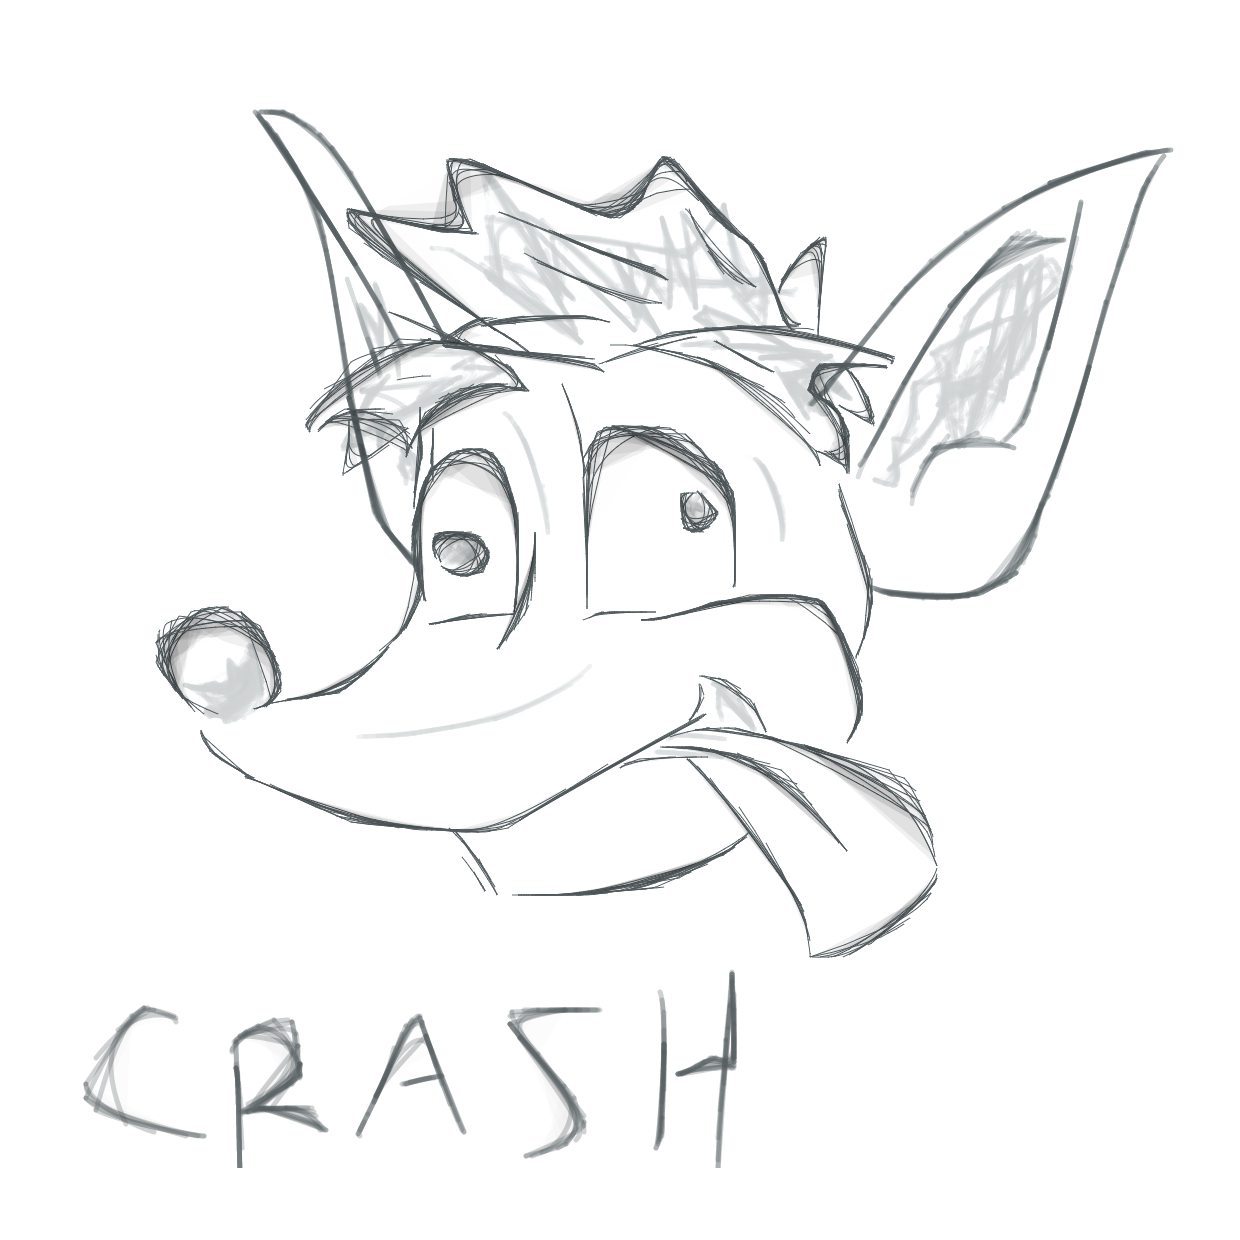 Crash Bandicoot - Drawing Skill